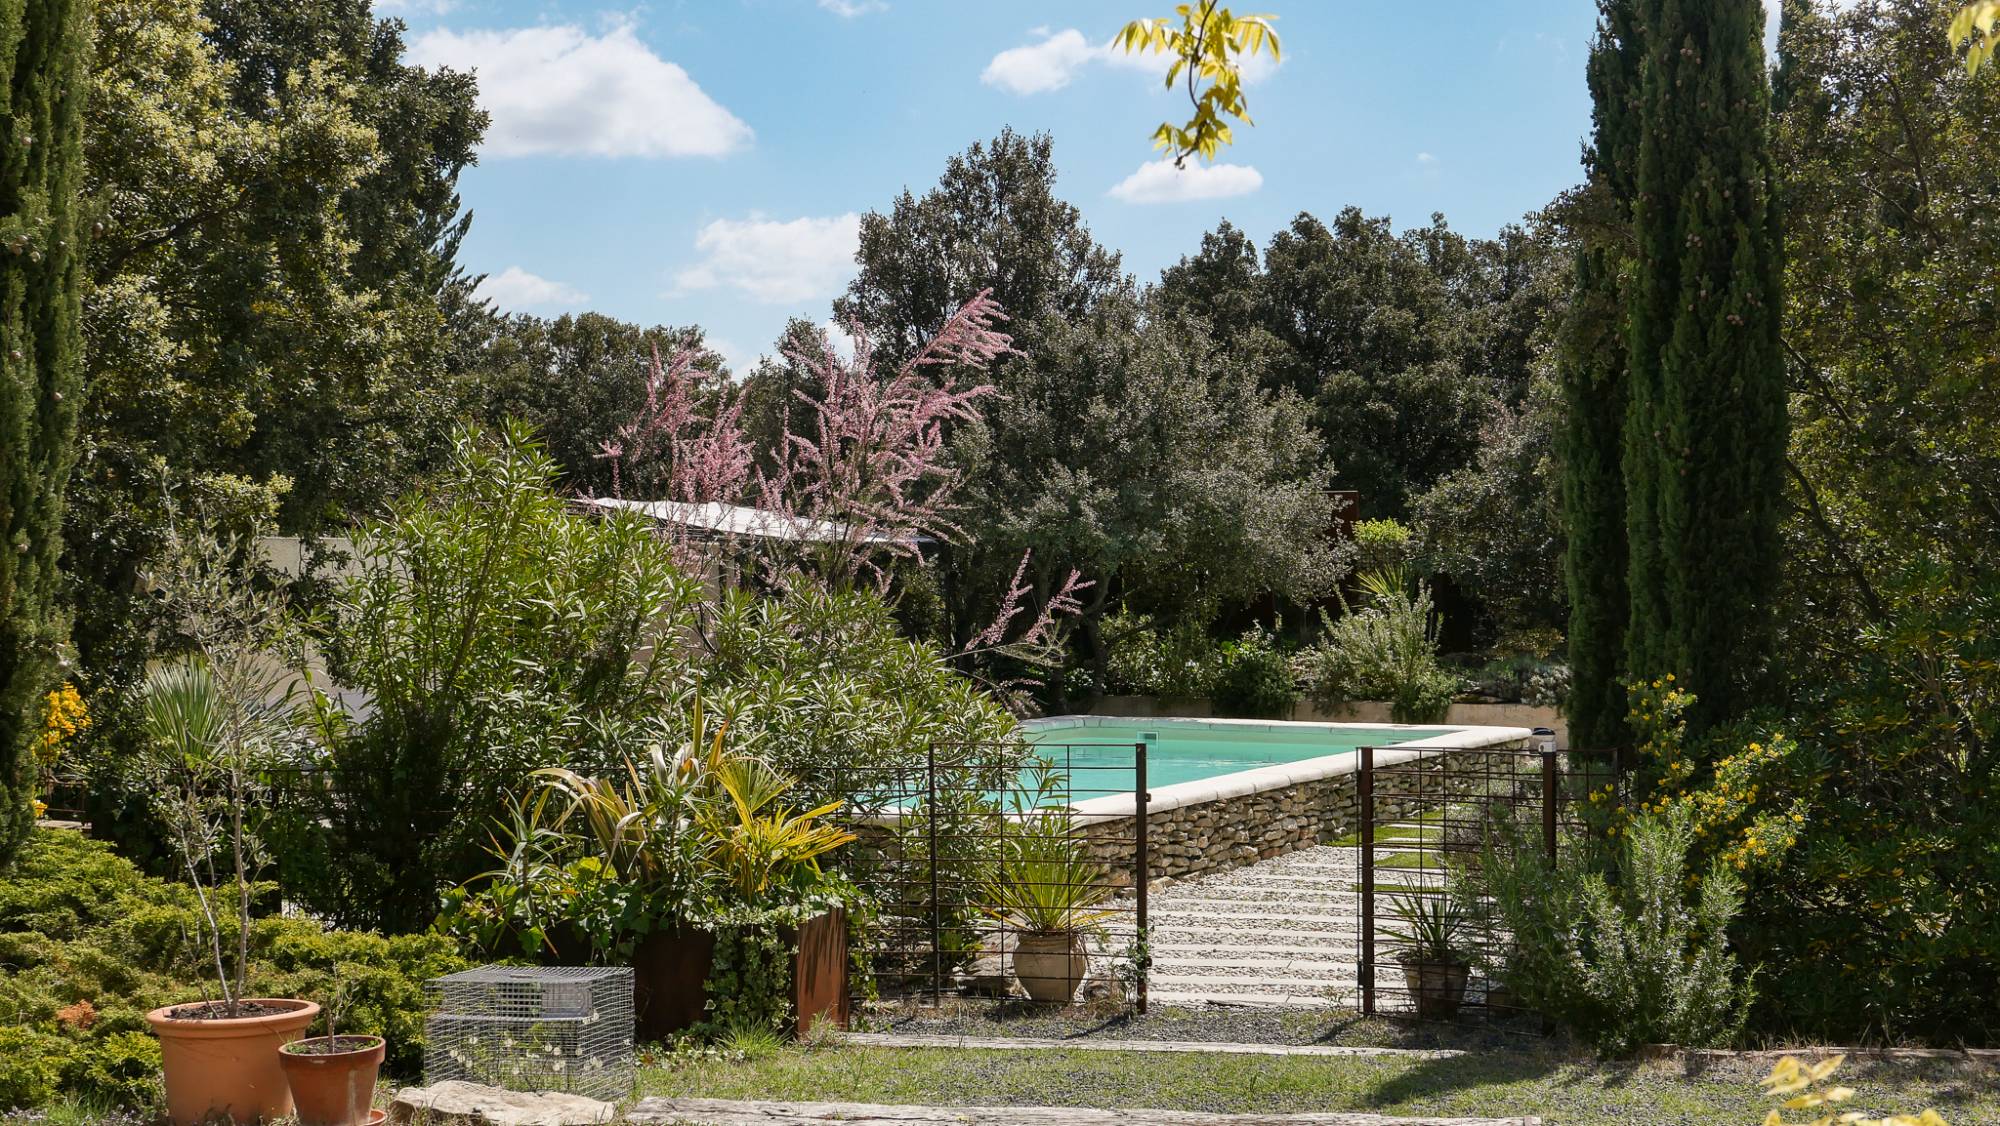 Location de vacances avec piscine en Drôme Provençal